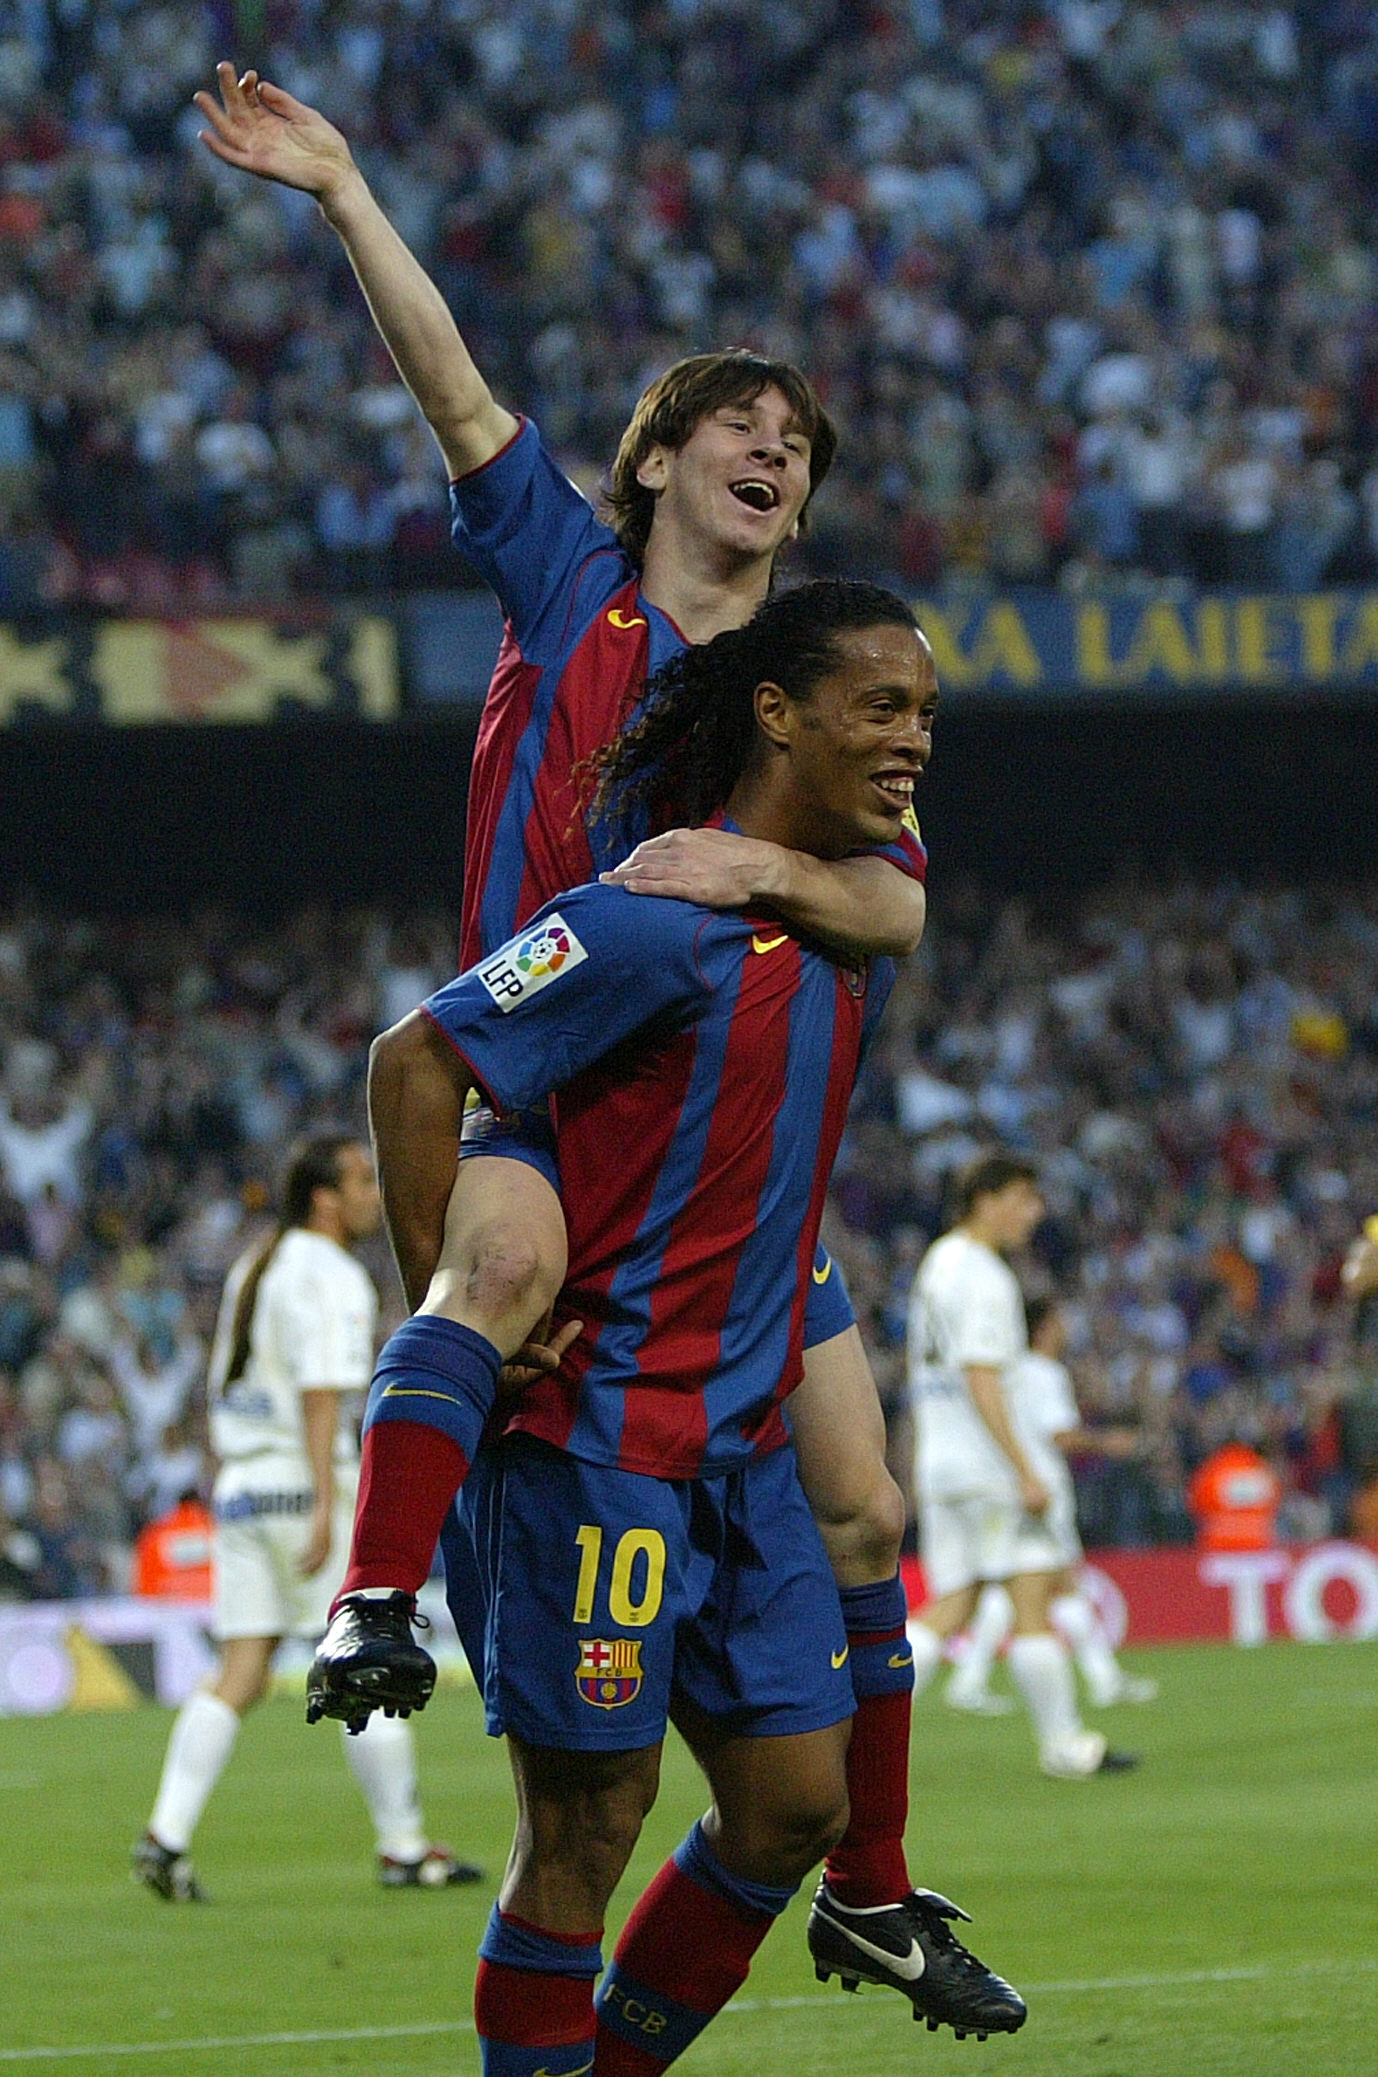 Messi és Ronaldinho 2005-ben azt ünneplik, hogy az előbbi az utóbbi gólpasszából megszerezte élete első gólját a spanyol bajnokságban